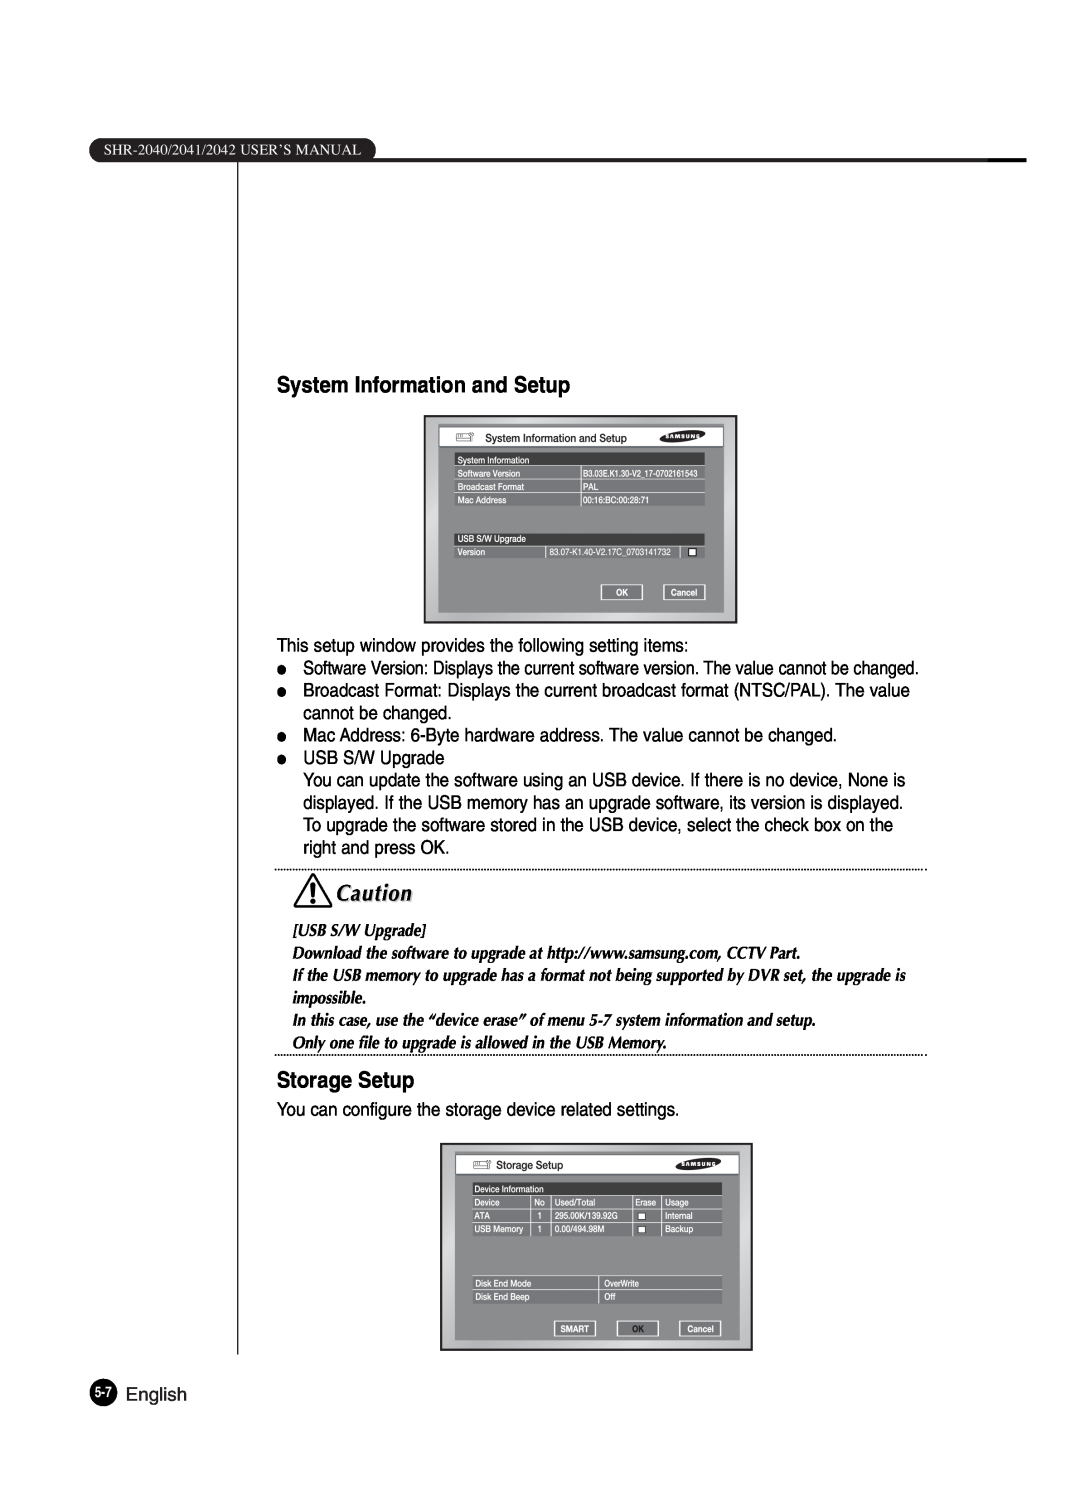 Samsung SHR-2042P250, SHR-2040P250 manual System Information and Setup, Storage Setup, English 